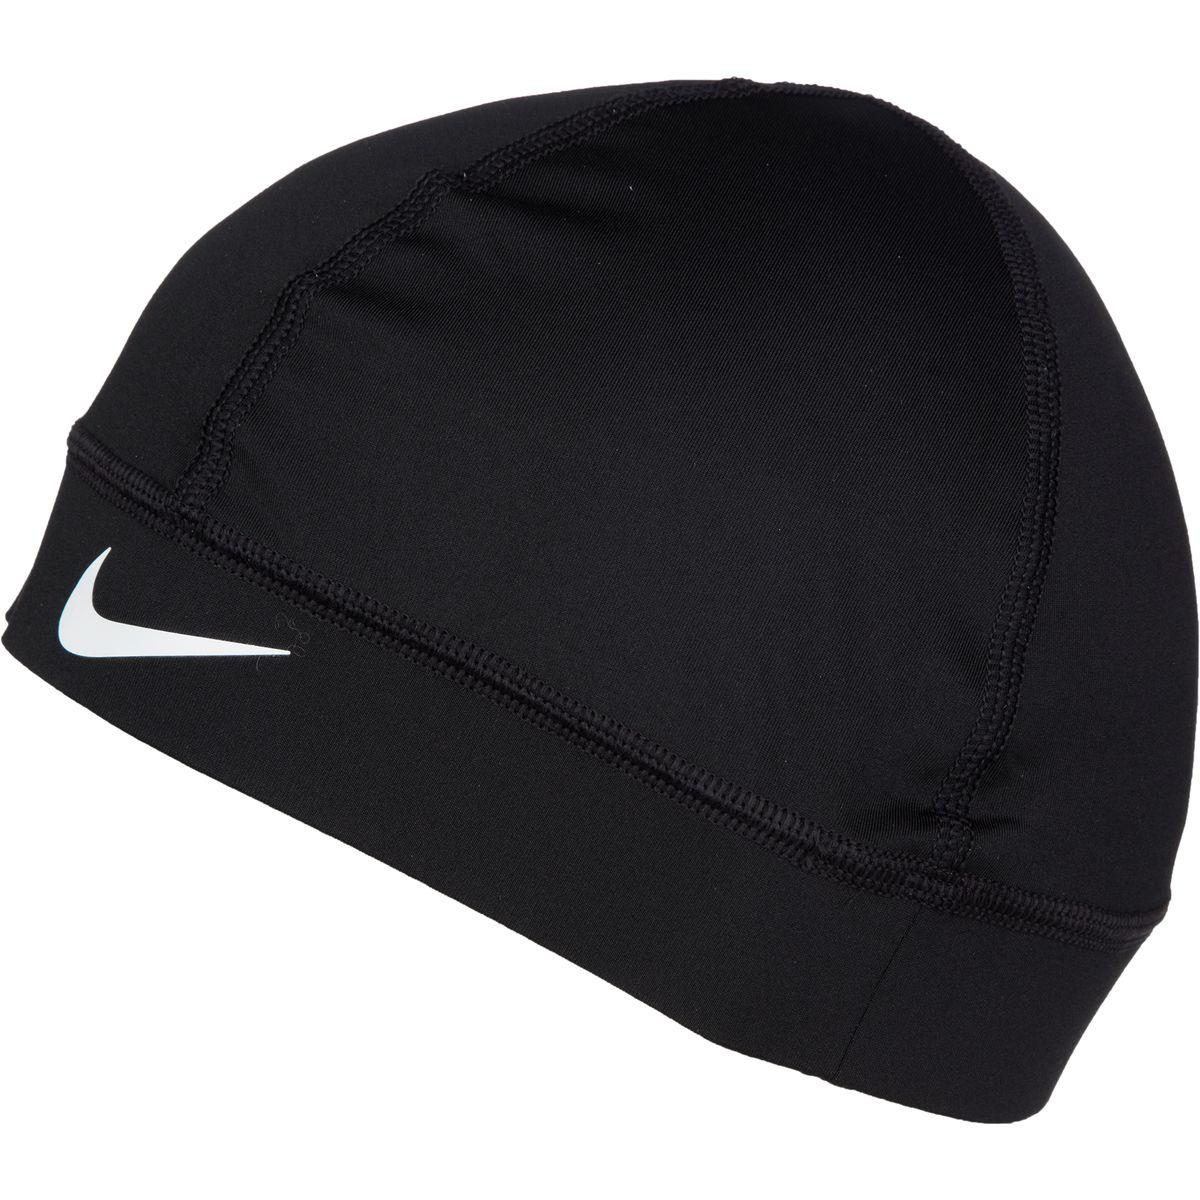 Nike Synthetic Pro Skull Cap In Blackwhite Black For Men Lyst